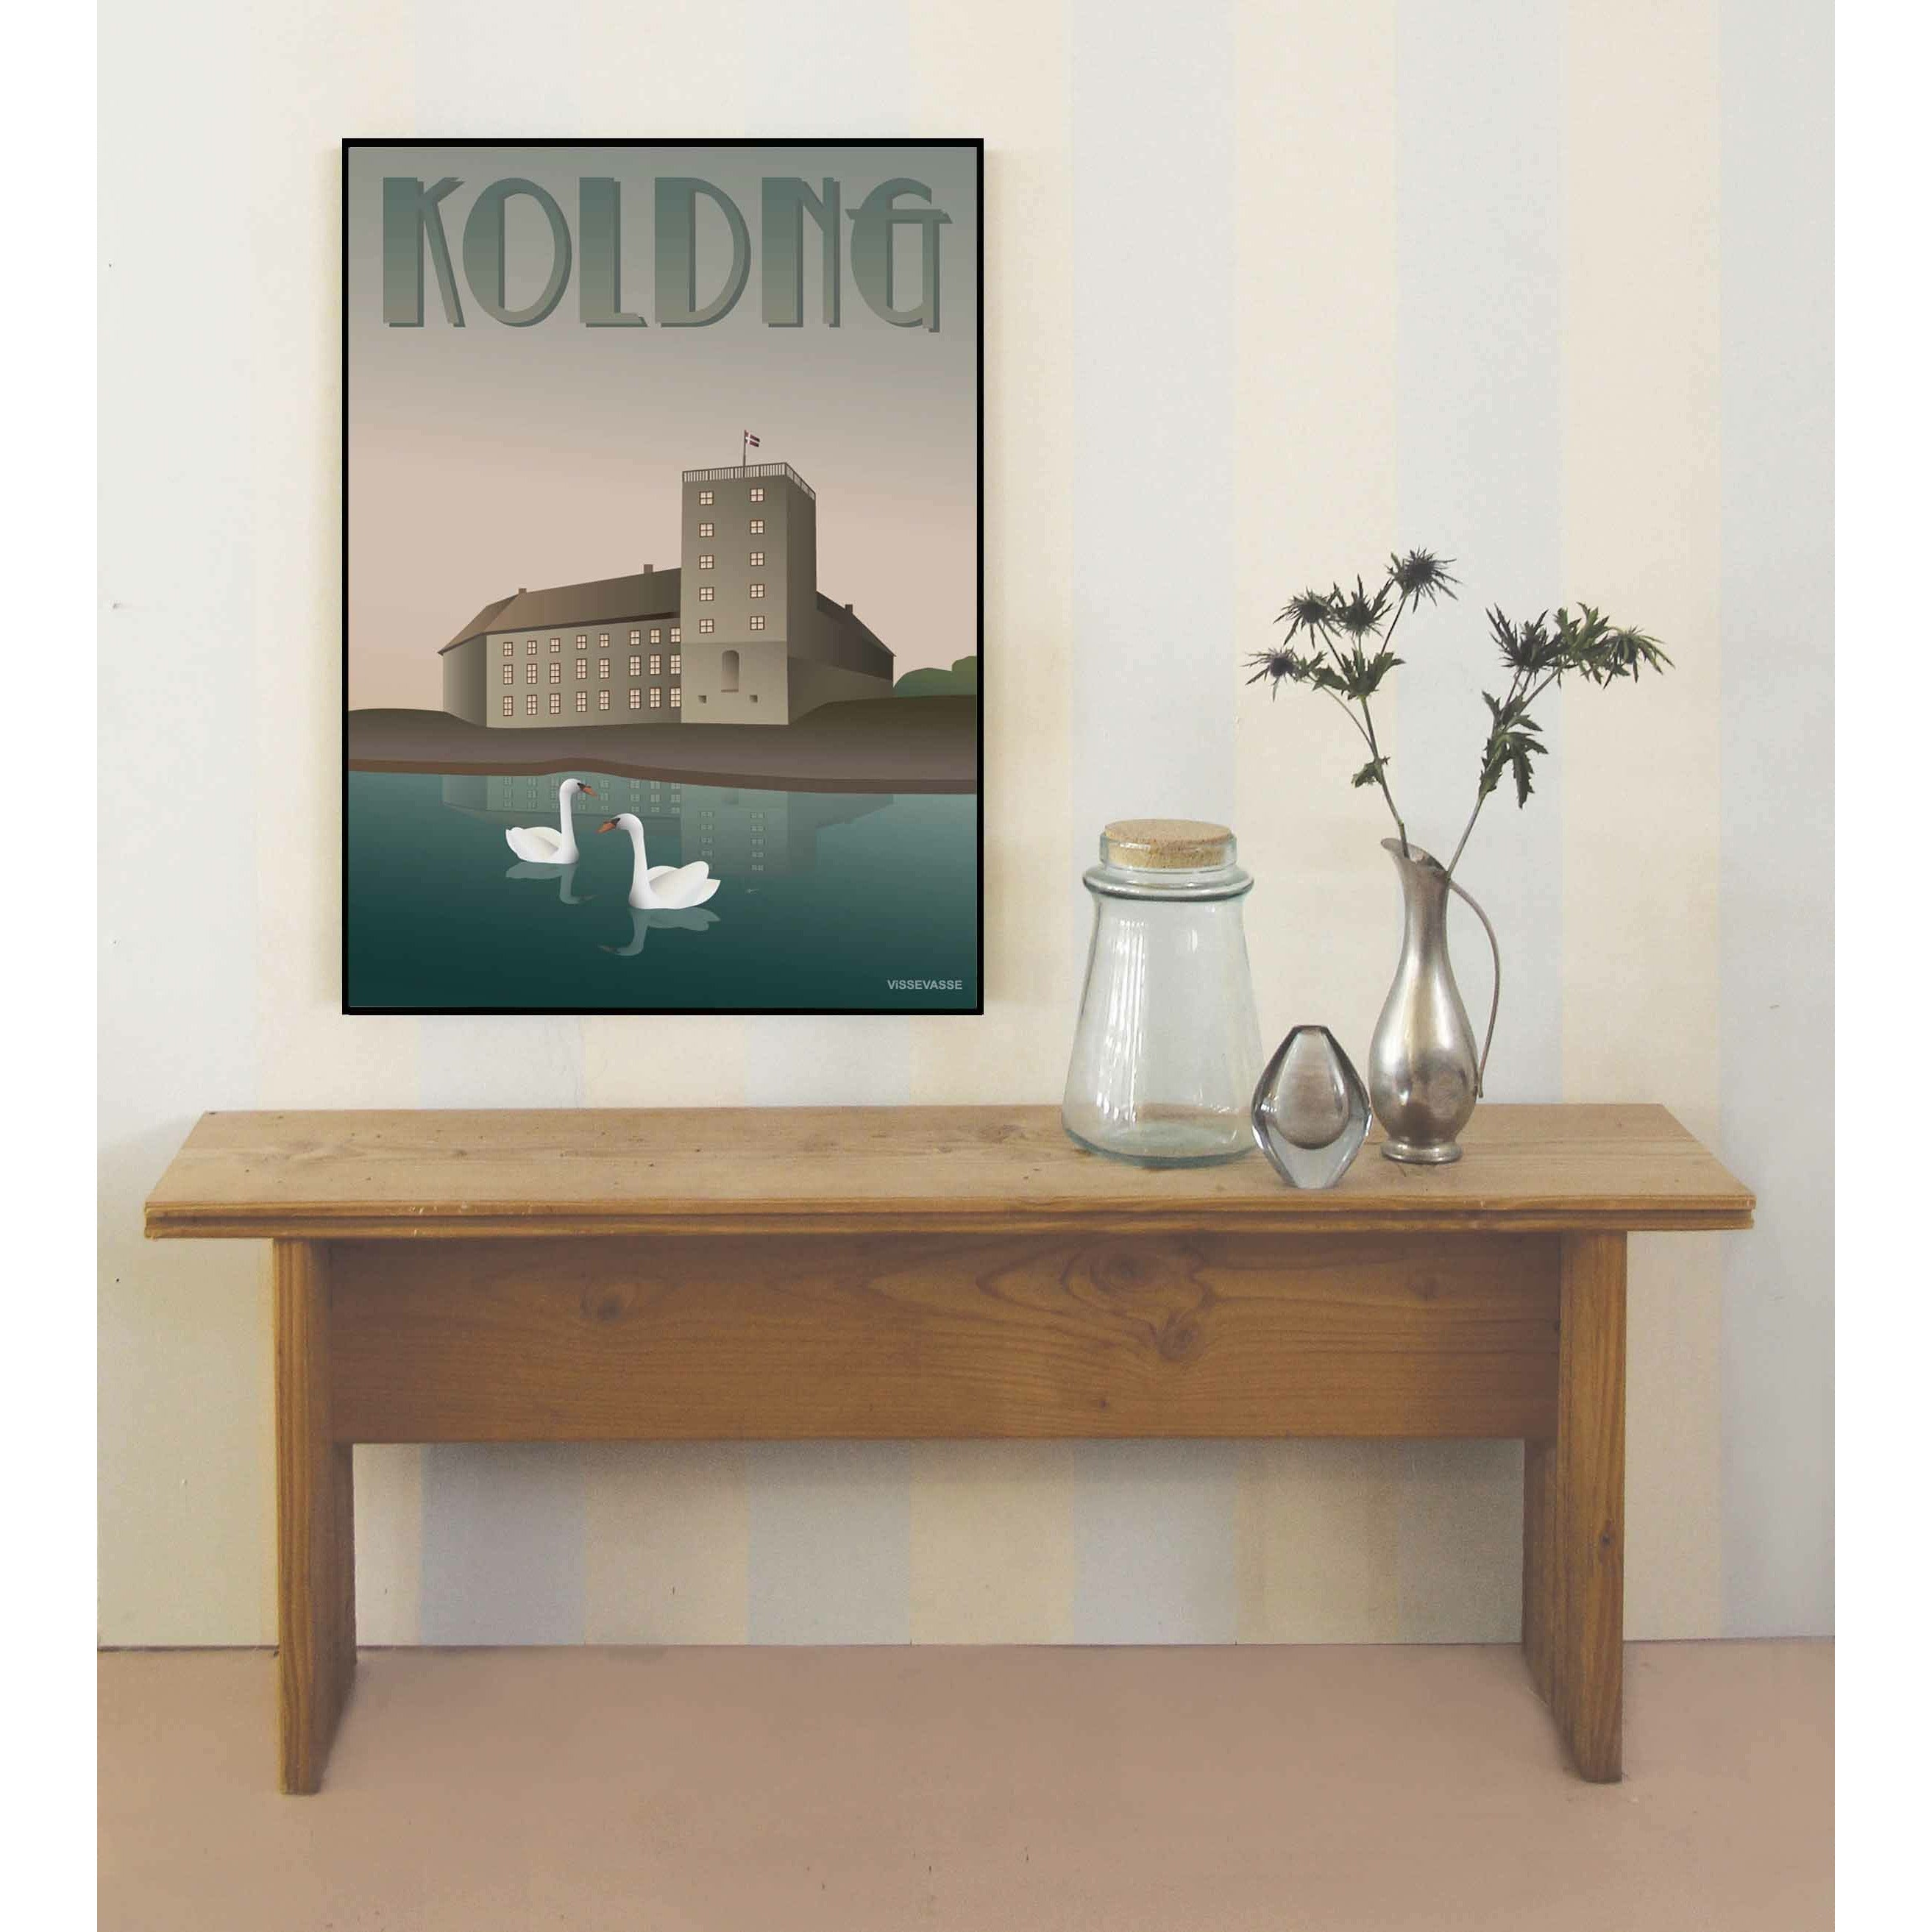 Affiche Vissevasse Kolding Koldinghaus, 70 x100 cm